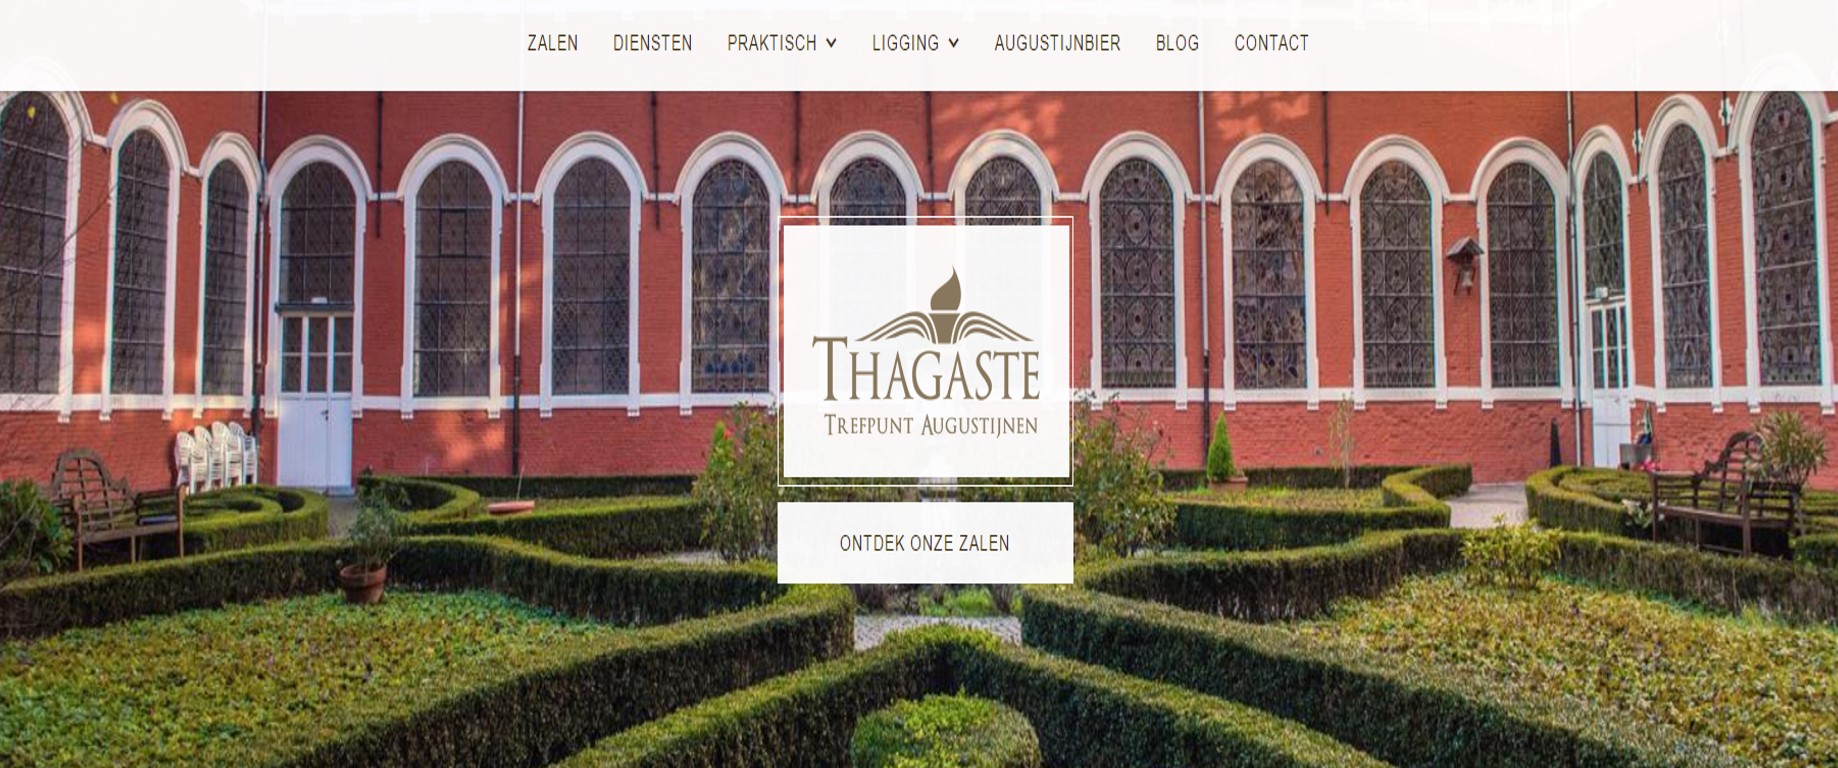 Trefpunt Thagaste - Augustijnen - website. Binnentuin van het oude St. Stefanusklooster